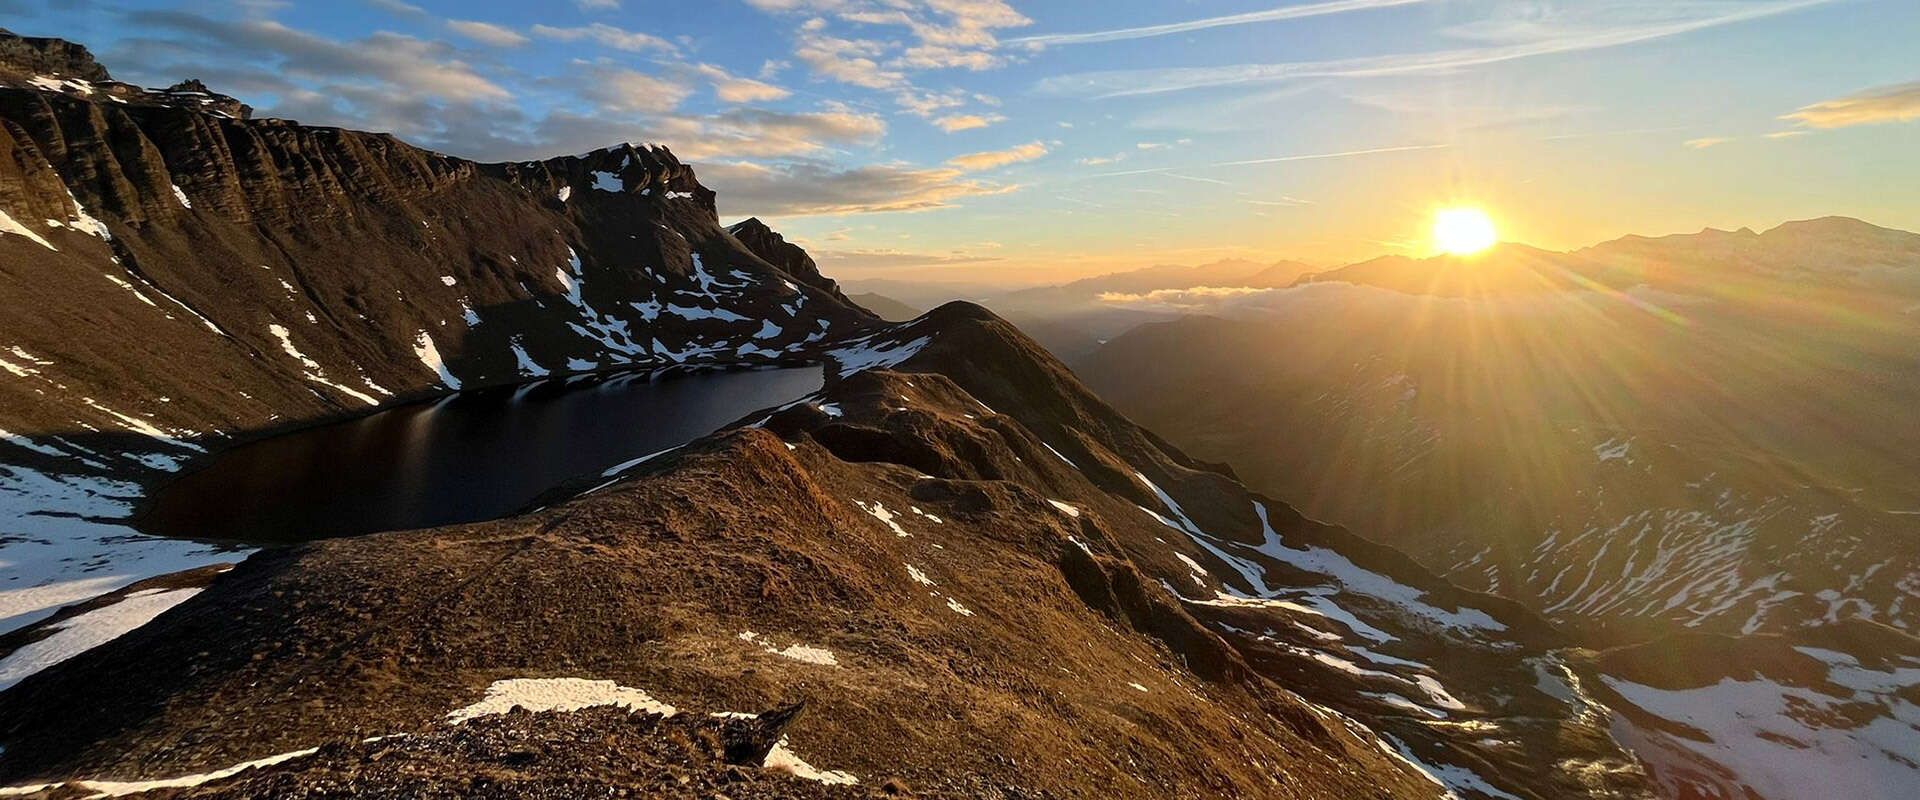 Bergkette mit Sonnenaufgang in Tux im Zillertal